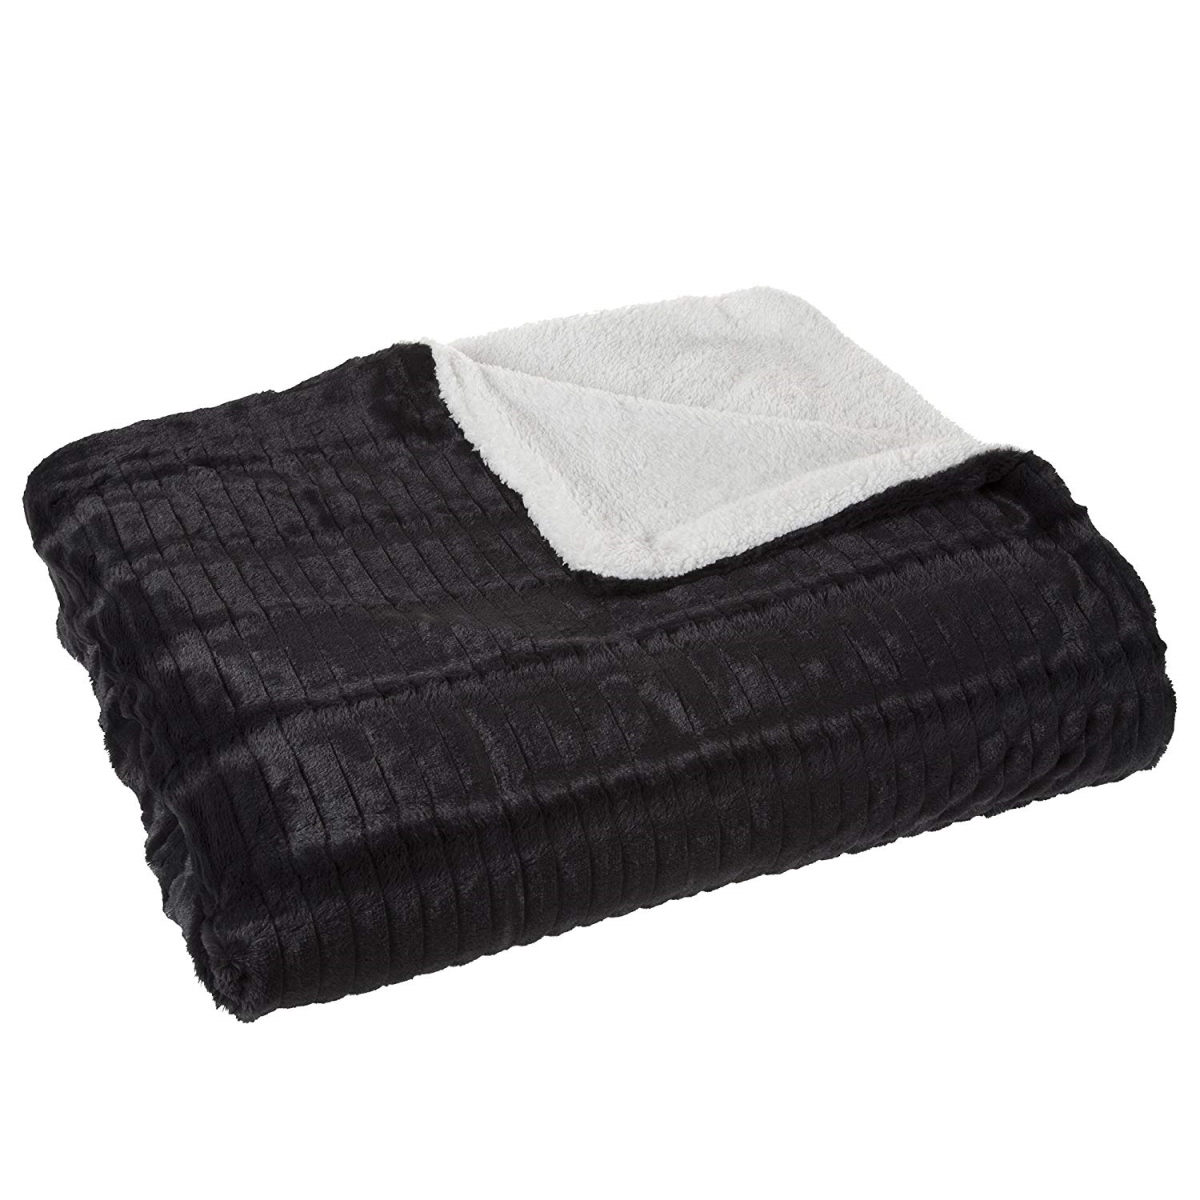 61a-01138 Fleece & Sherpa Blanket, Twin Size - Smoky Black